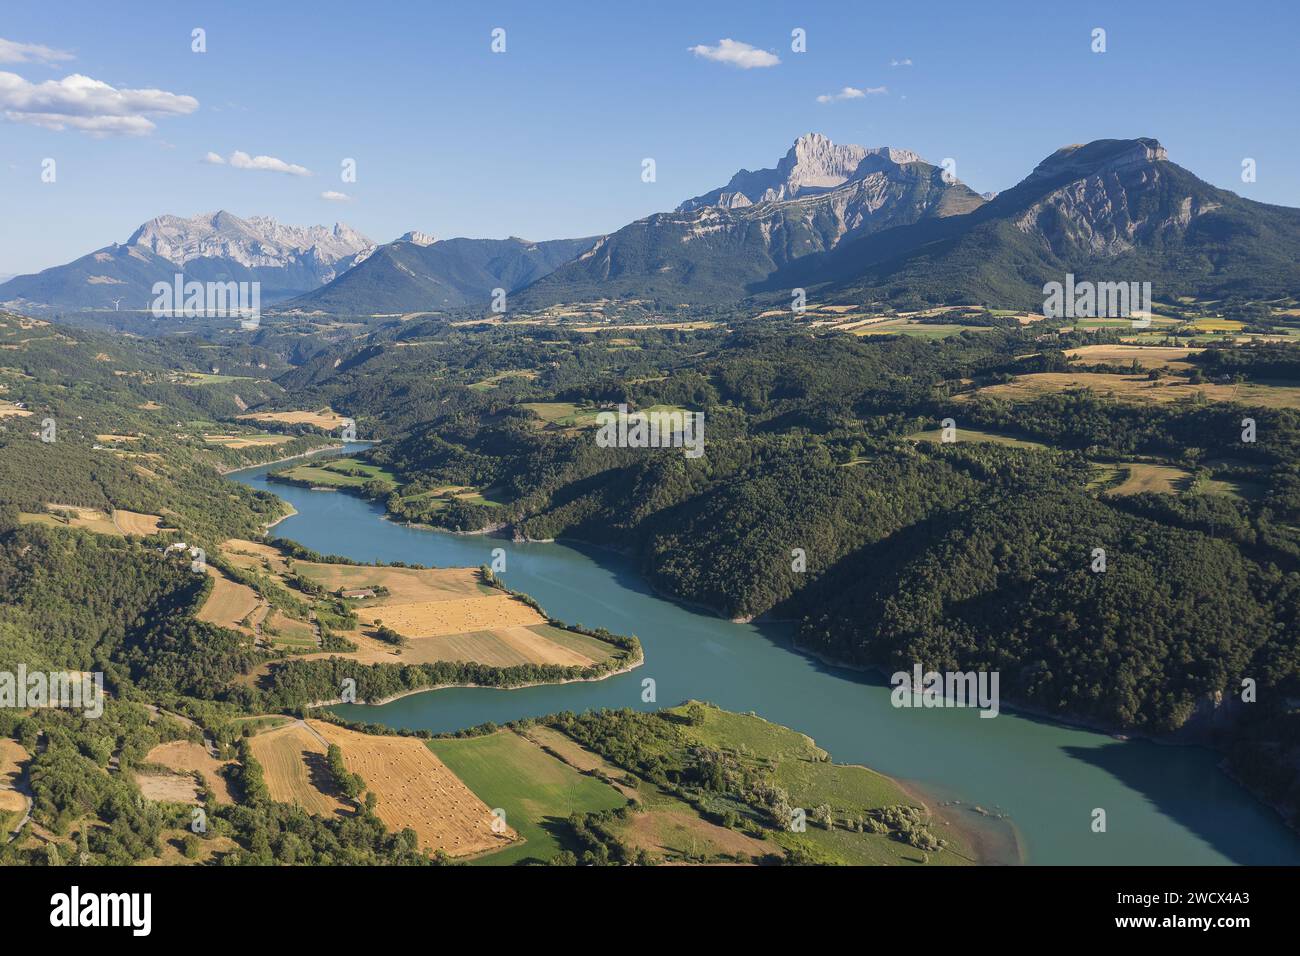 Francia, Isere, la regione della Matheysine (o altopiano matheysin), lago di Saint Pierre, Obiou e massiccio del Devoluy in background (vista aerea) Foto Stock